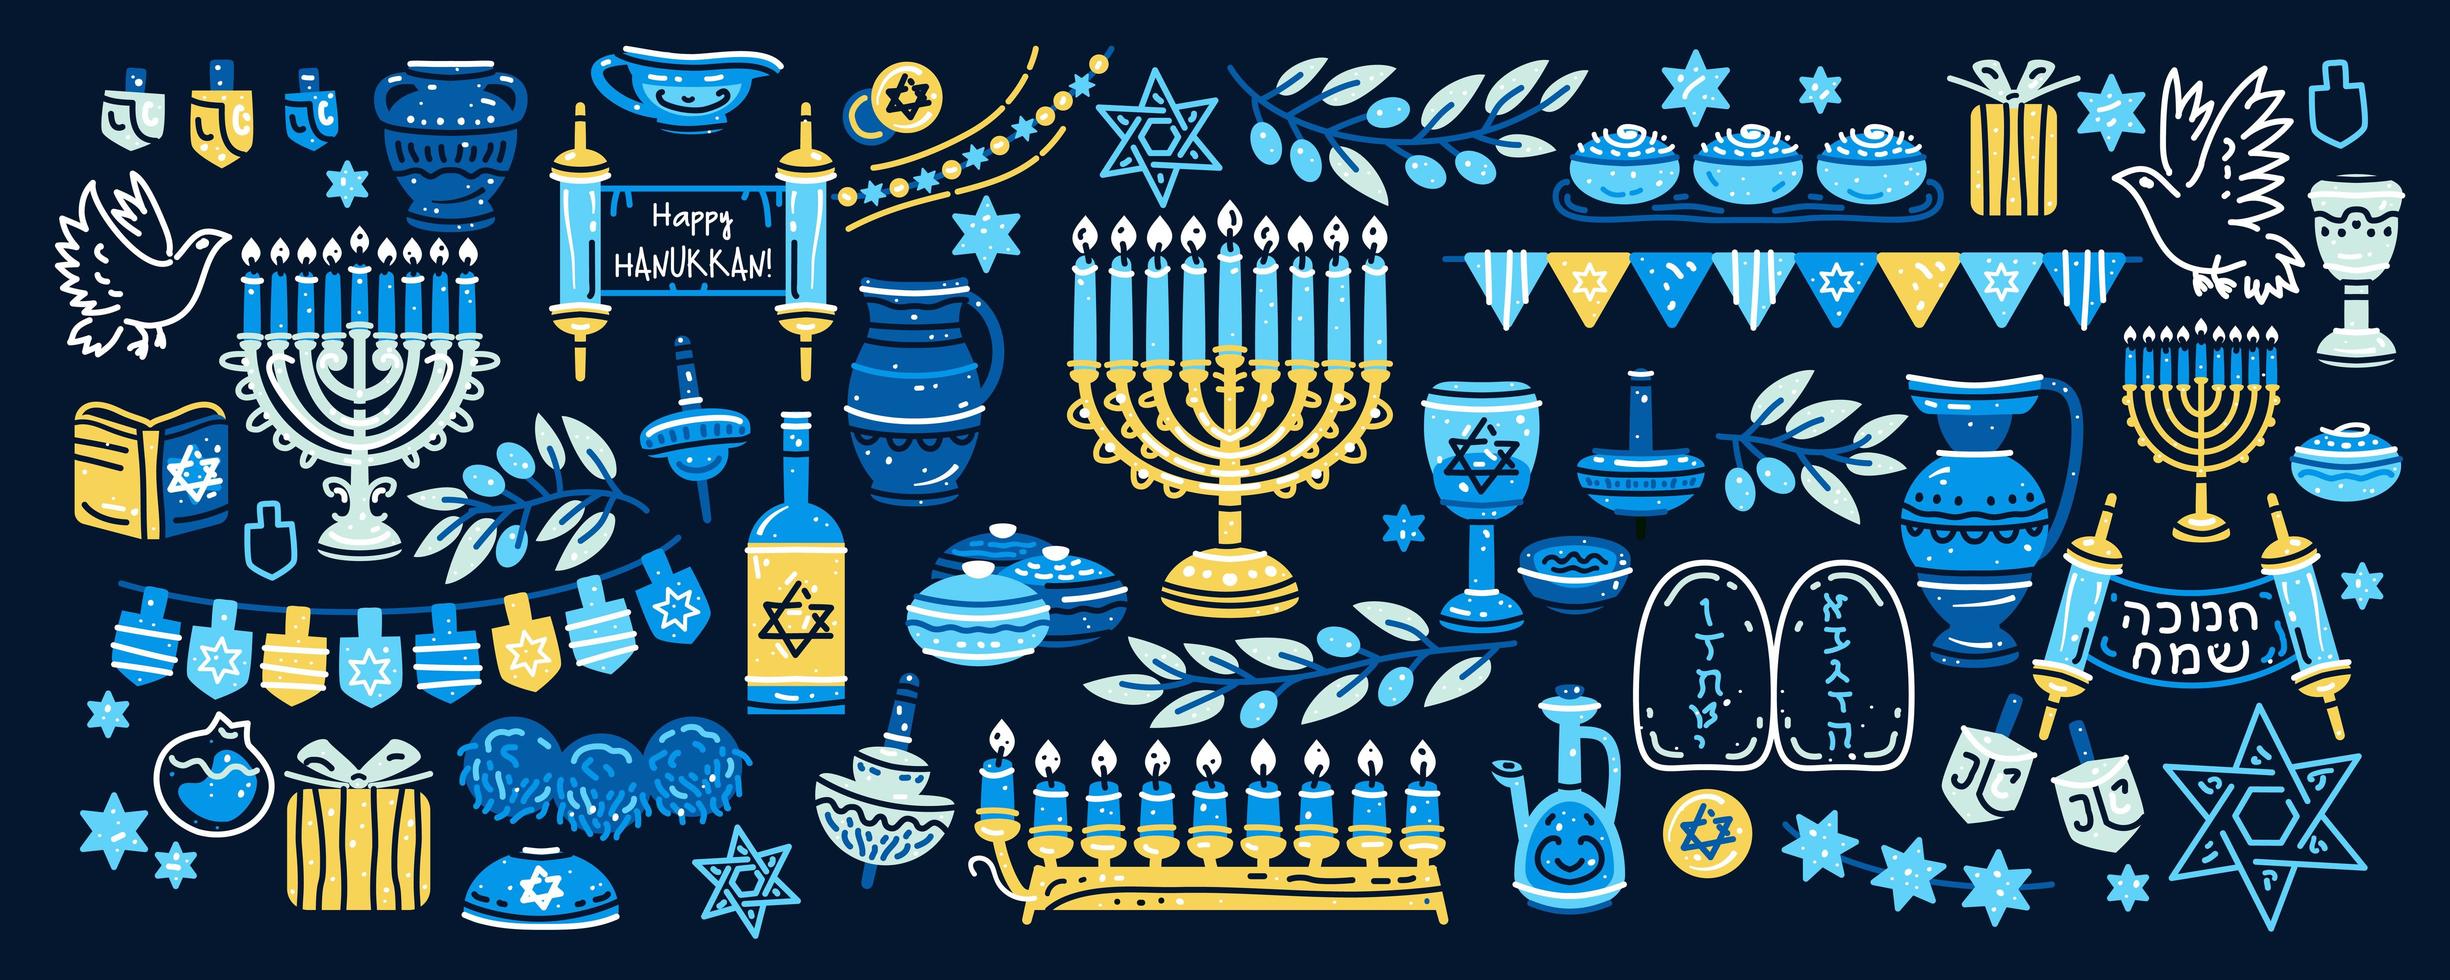 Hanukkah set. Big collection of Hanukkah symbols 3120433 Vector 